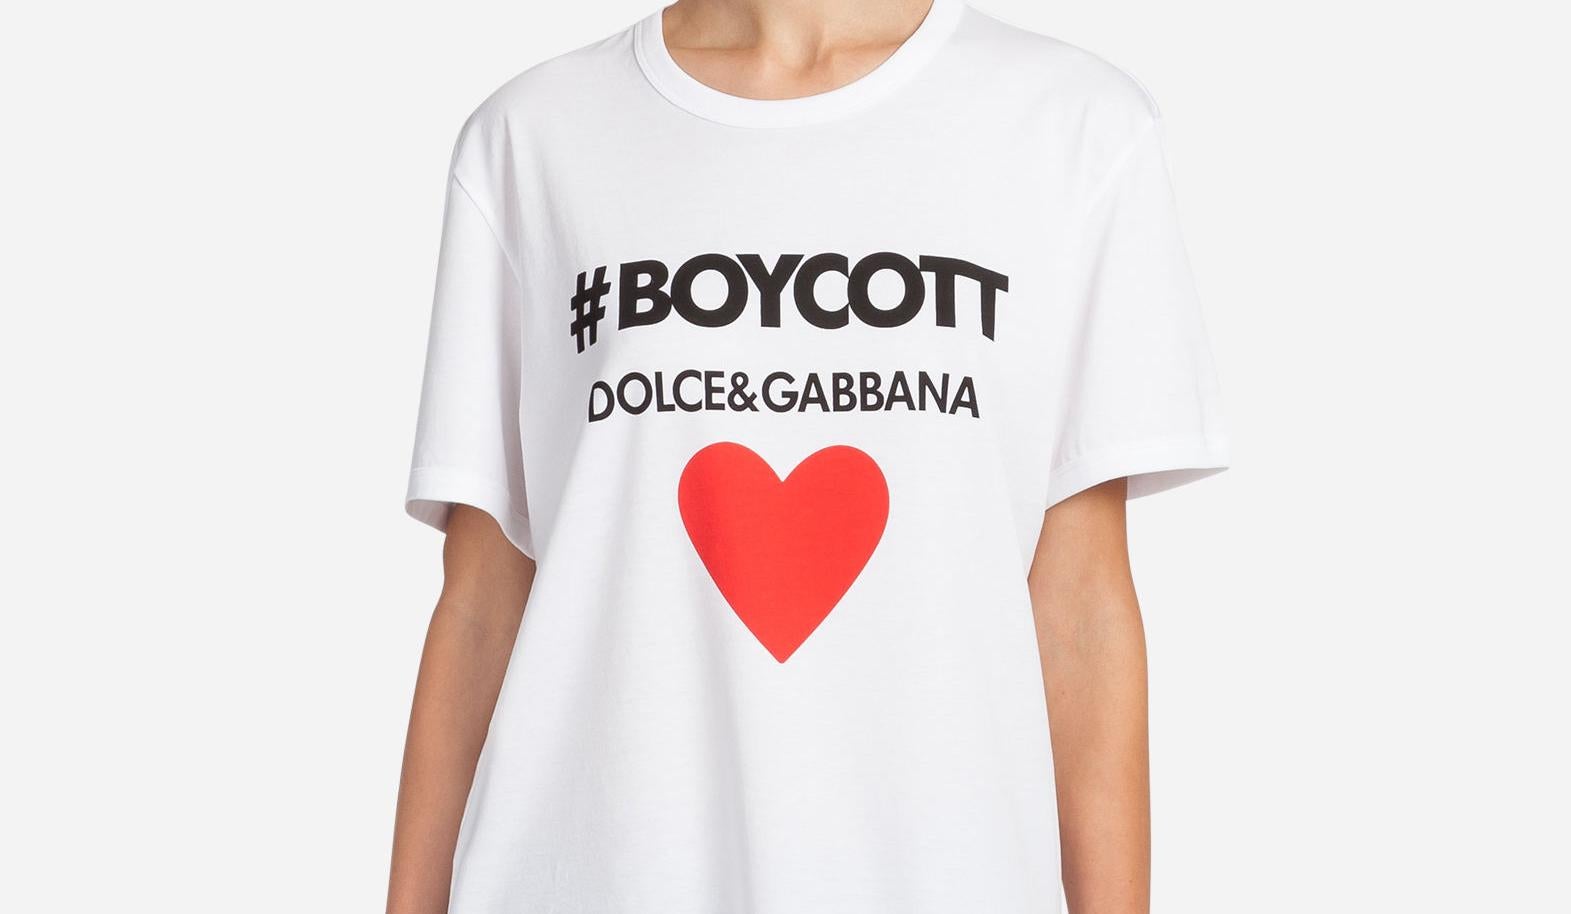 boycott dolce and gabbana t shirts